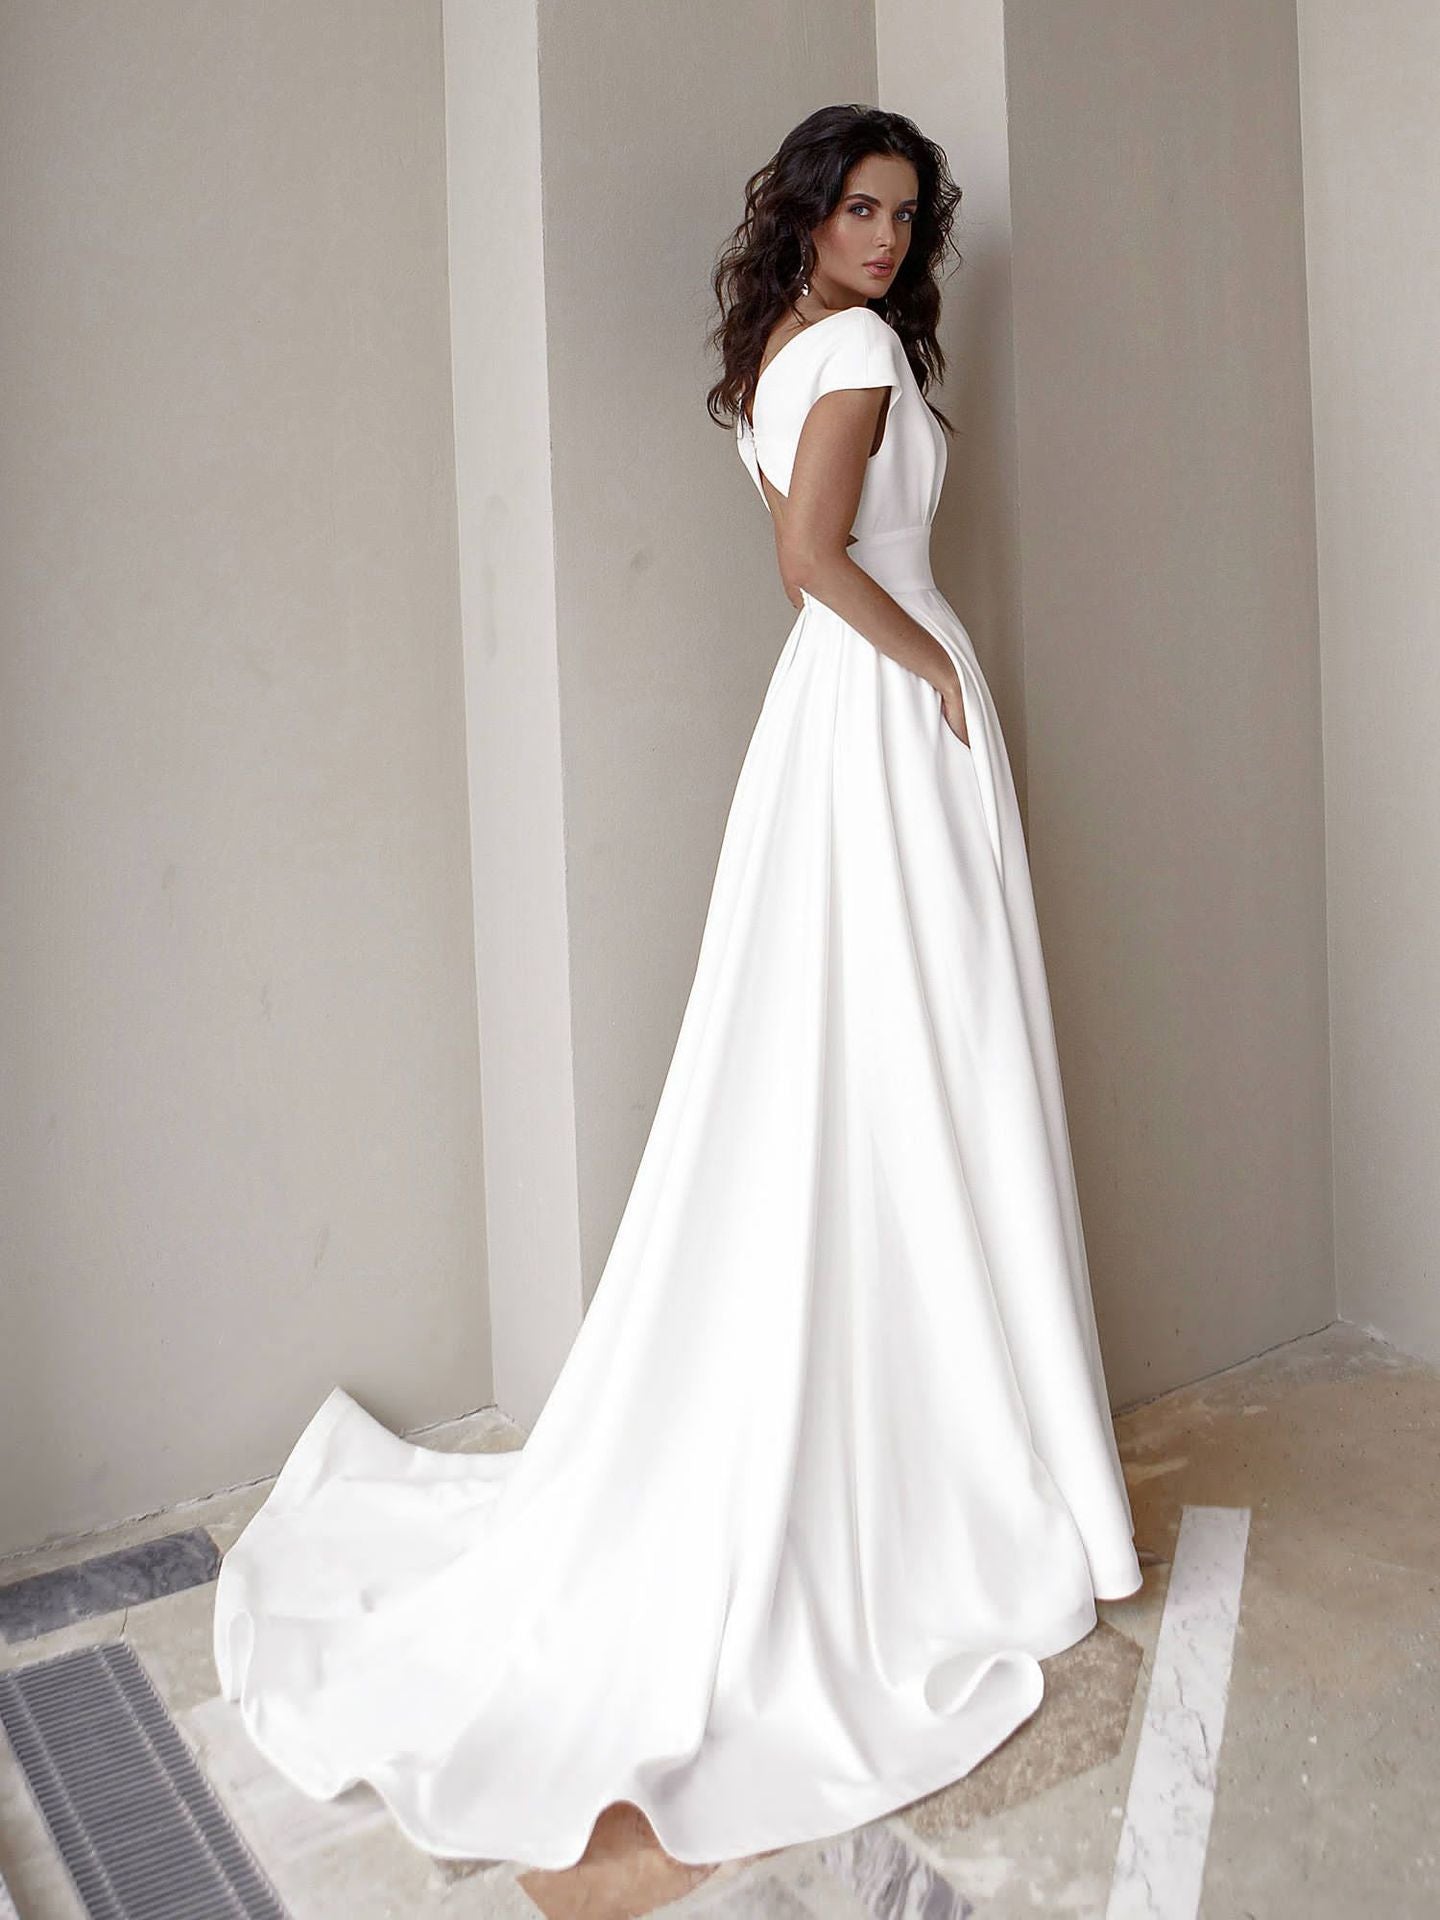 White Dress Aesthetic | Off Shoulder Elegant Flowly Dress